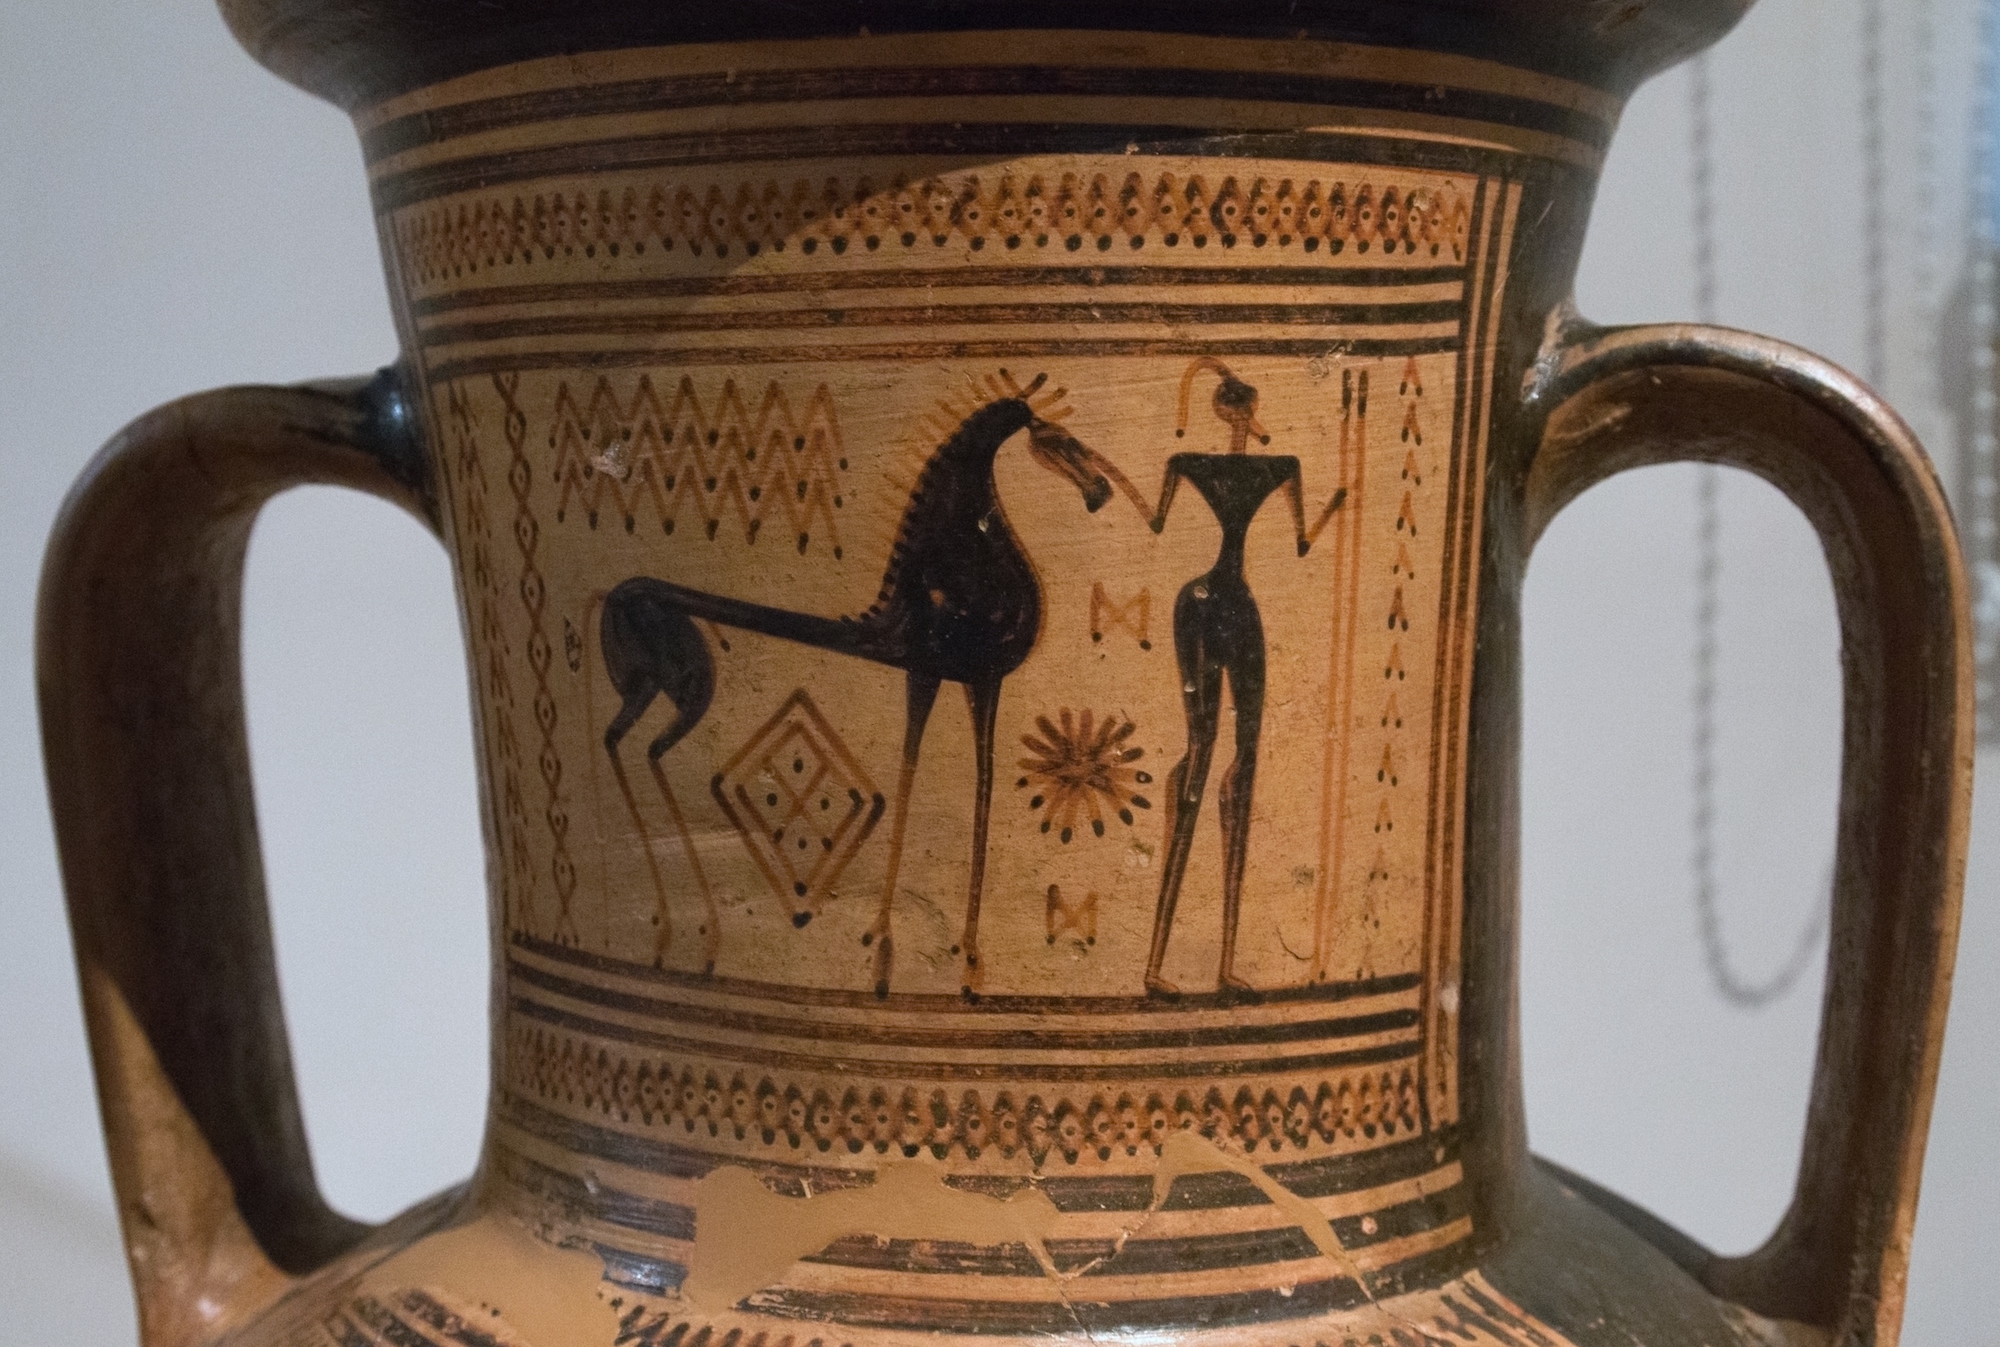 Were Women the True Artisans Behind Ancient Greek Ceramics?